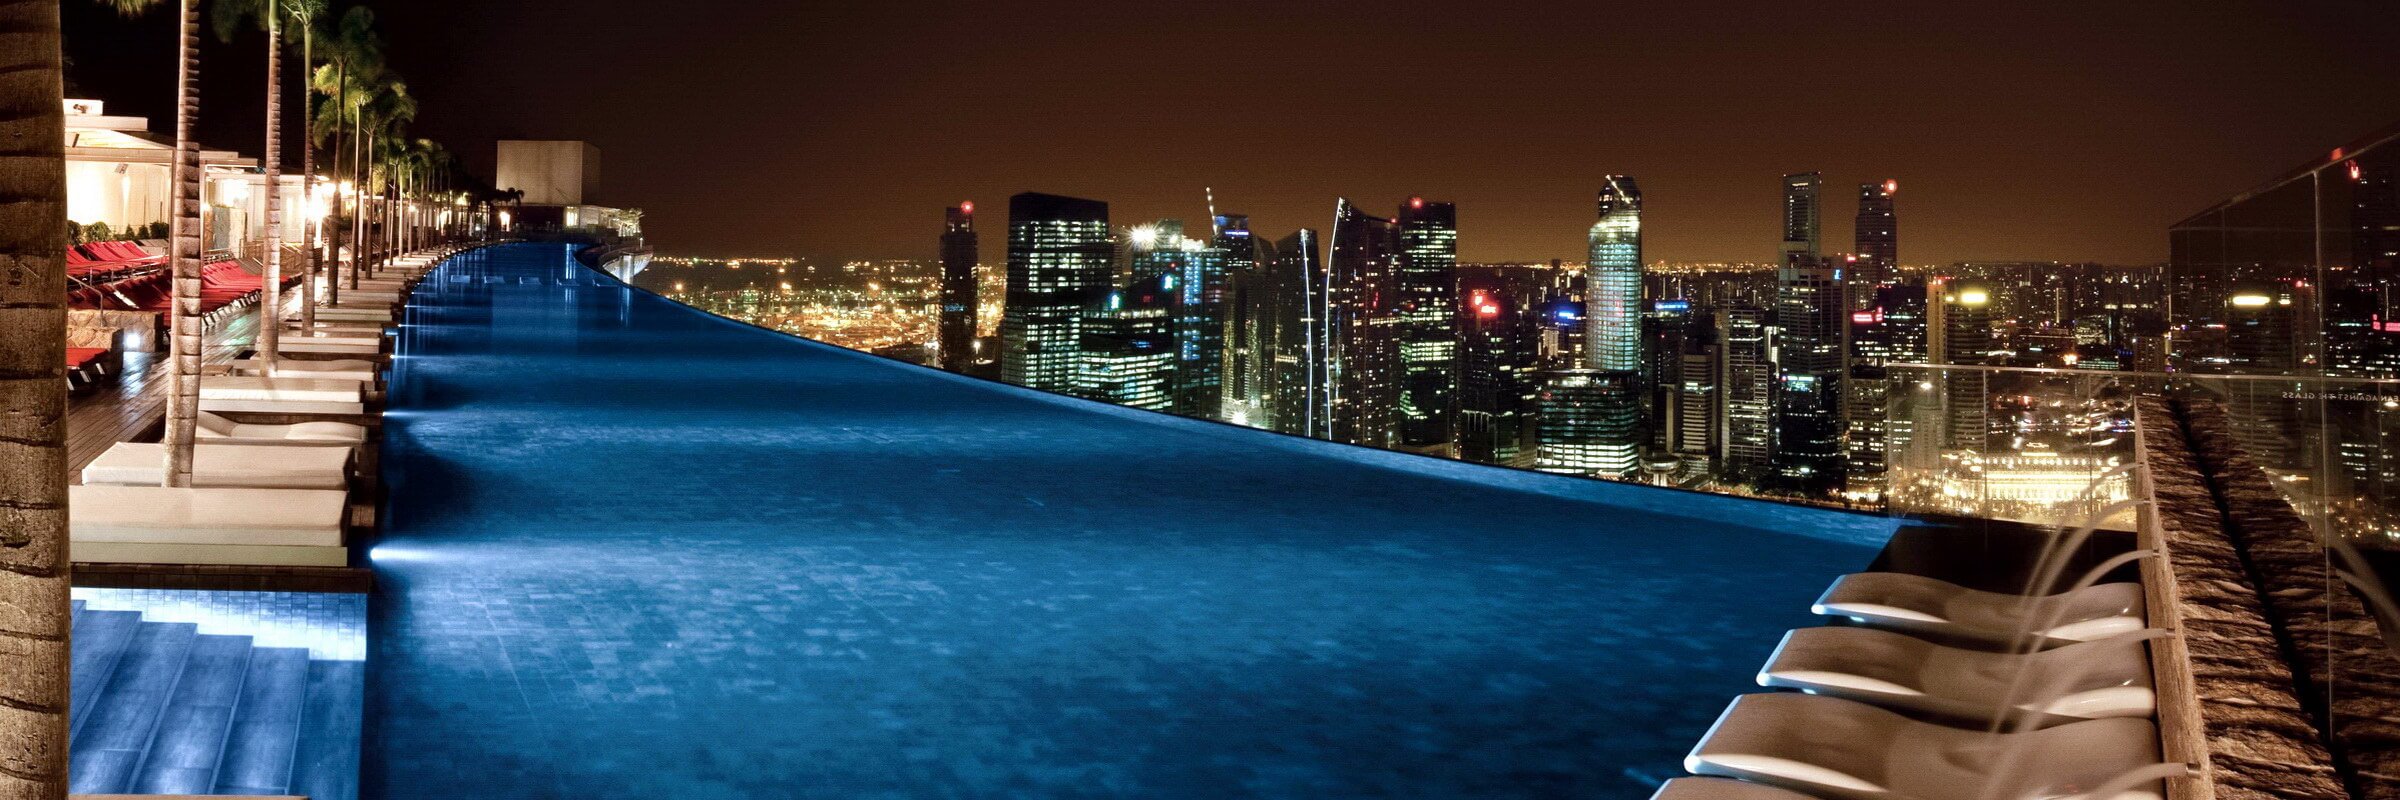 Der einzigartige Pool im Sky Park des Marina Bay Sands mit toller Aussicht bei Nacht